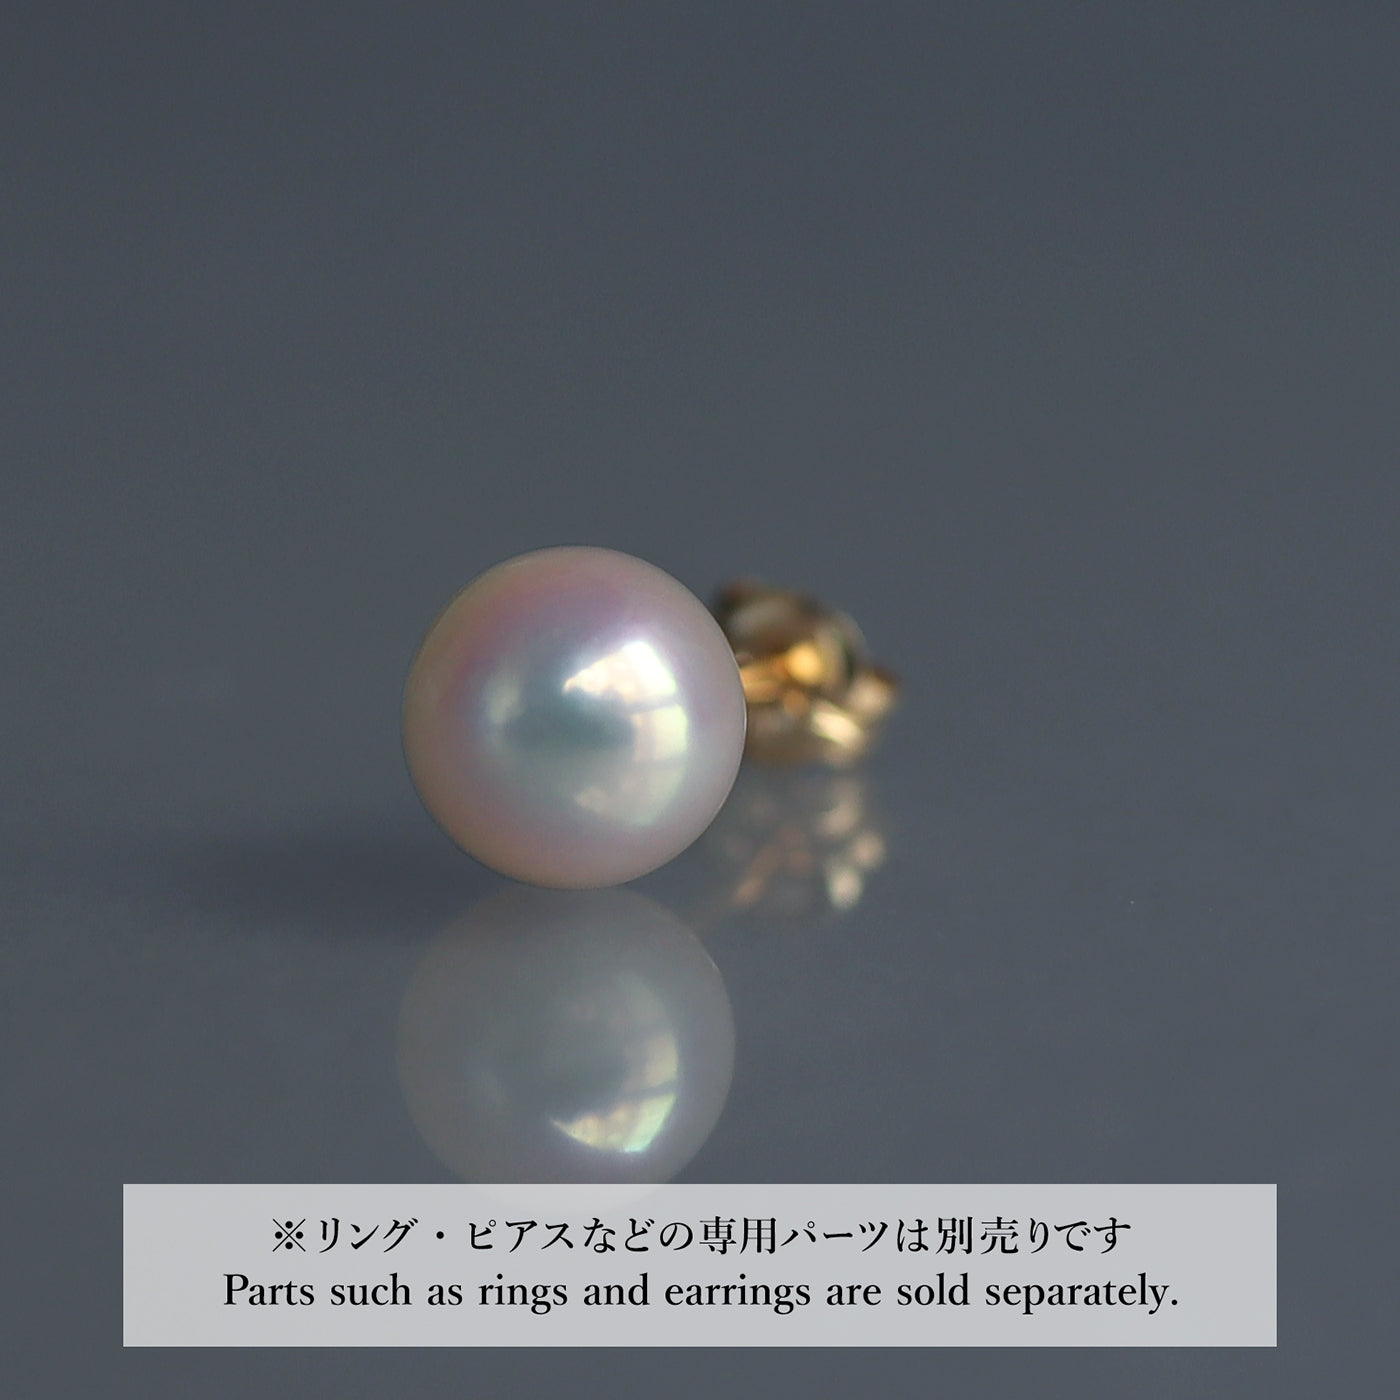 【COLLECTIBLE】Akoya Pearl (No. CA1744)